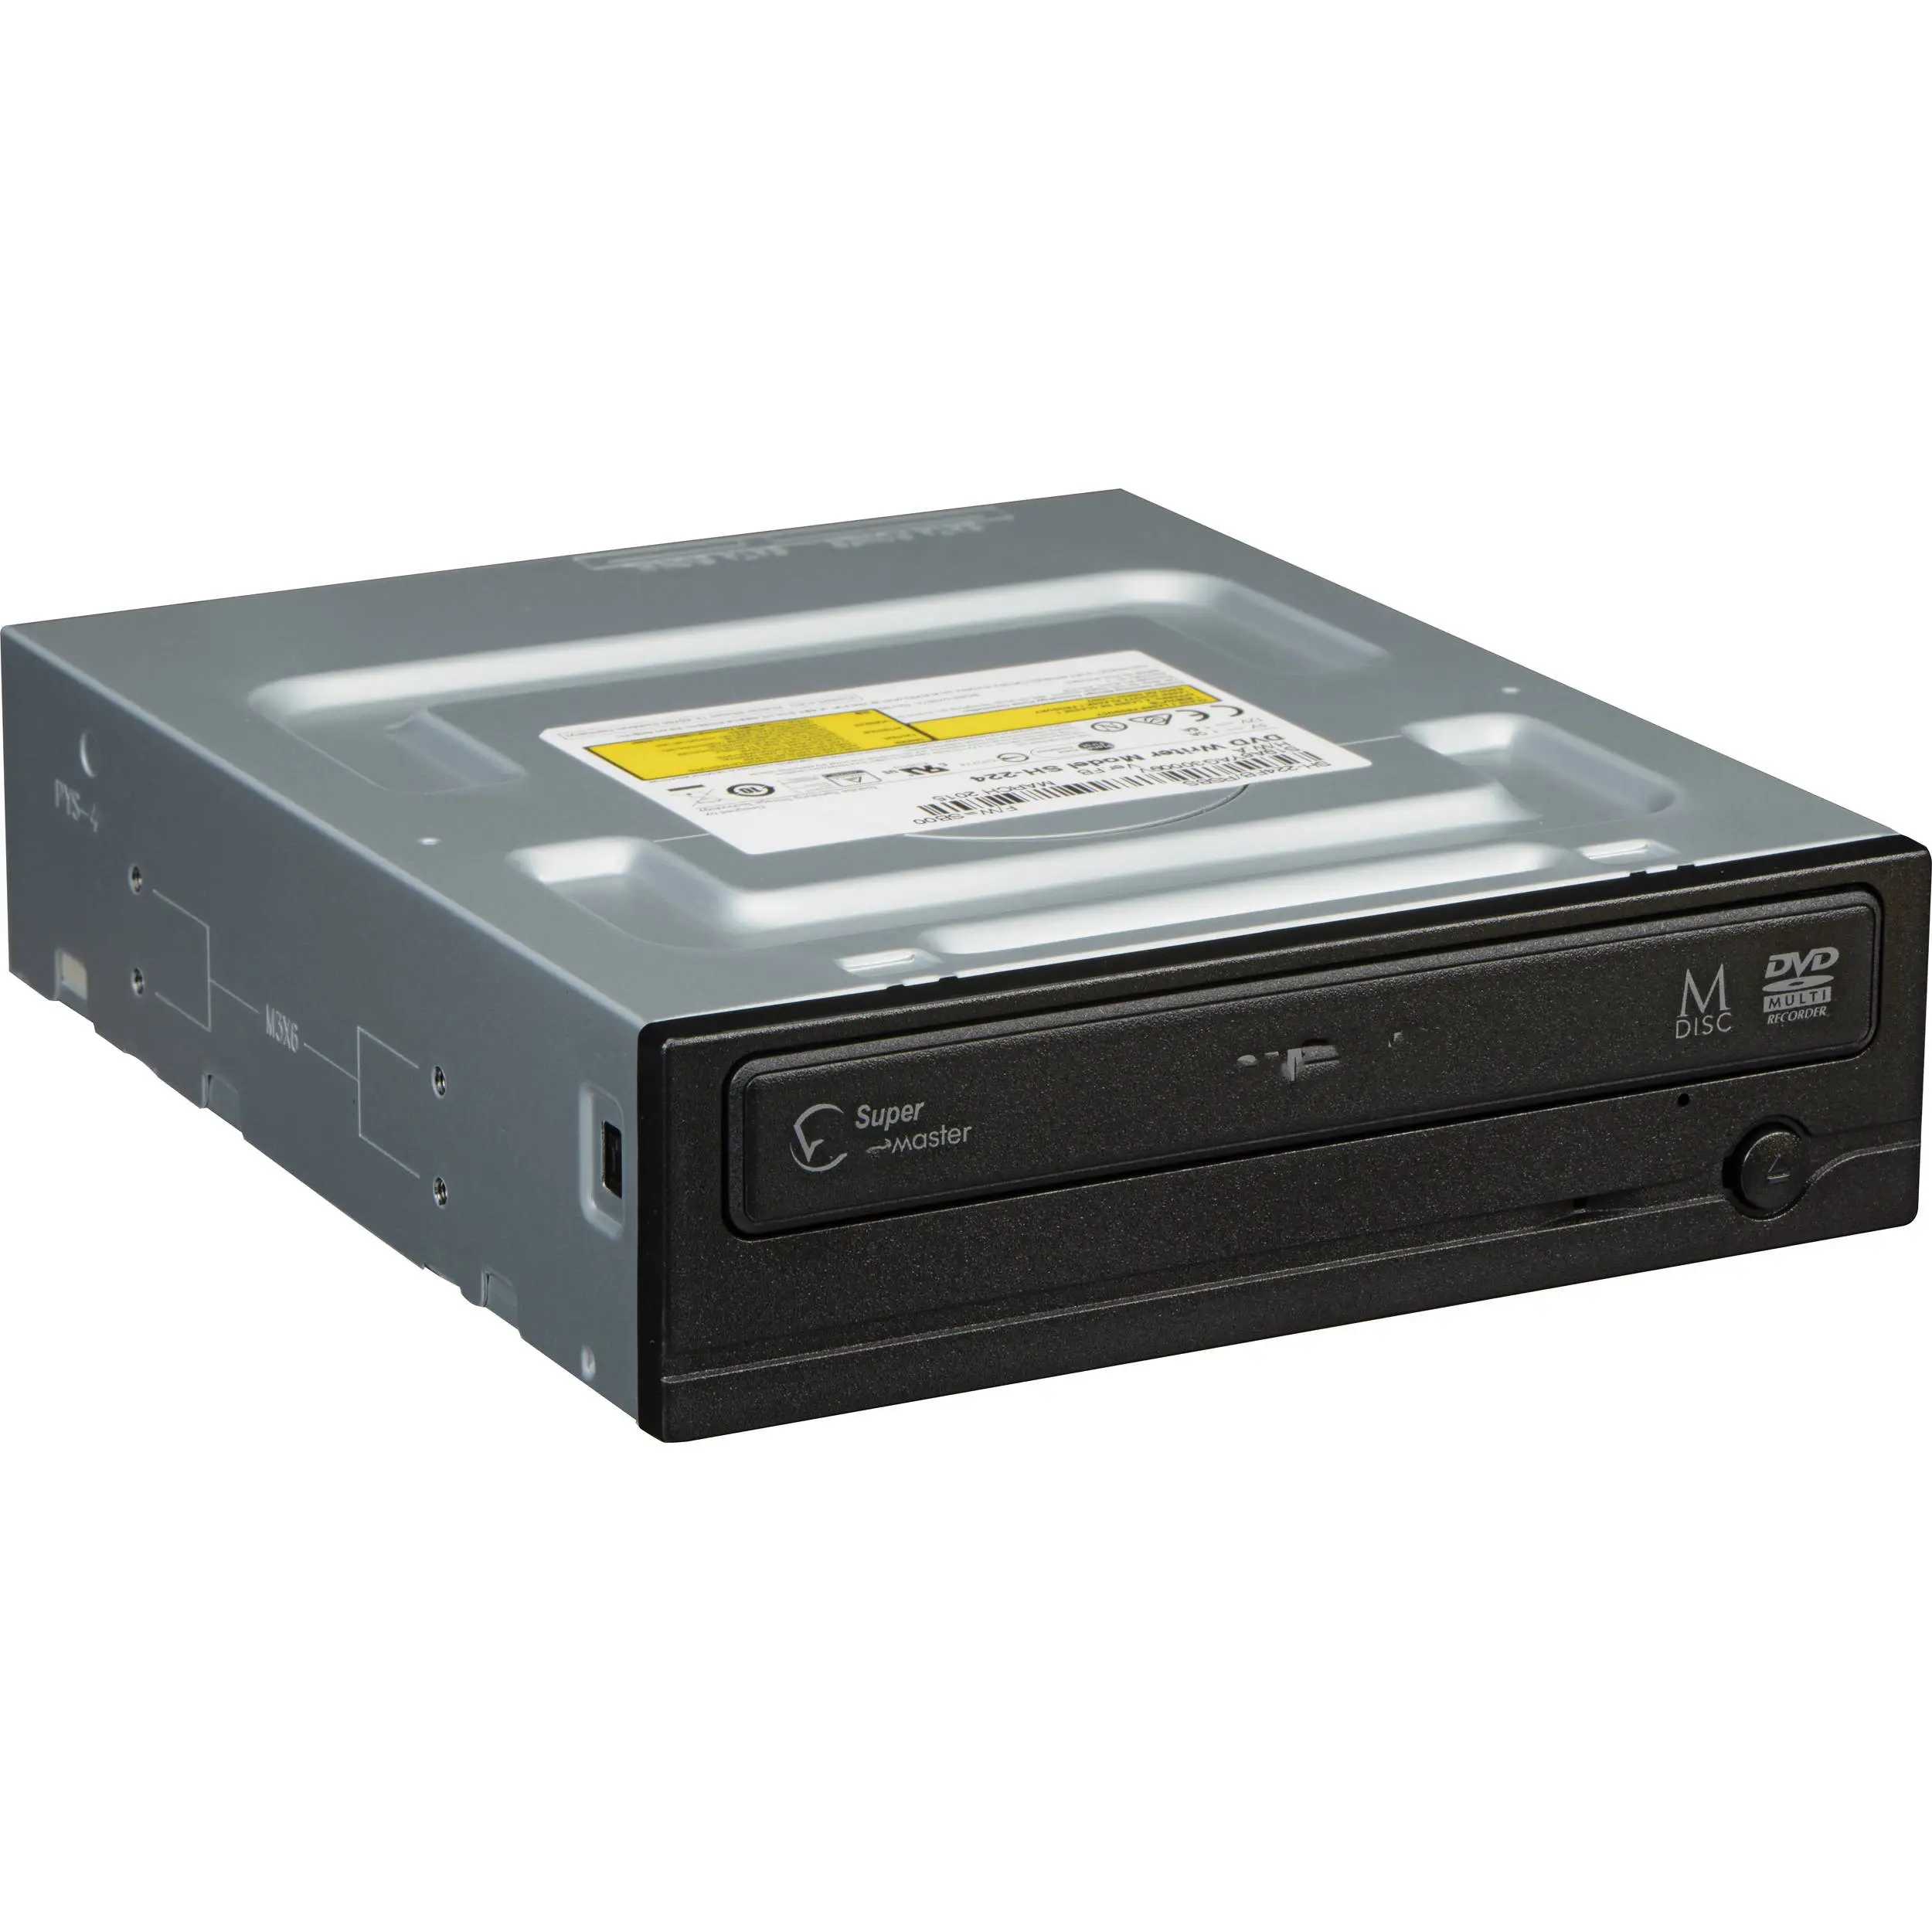 AD-7200A unidad de disco óptico para escritorio, DVD RW DL IDE, 20x (negro)